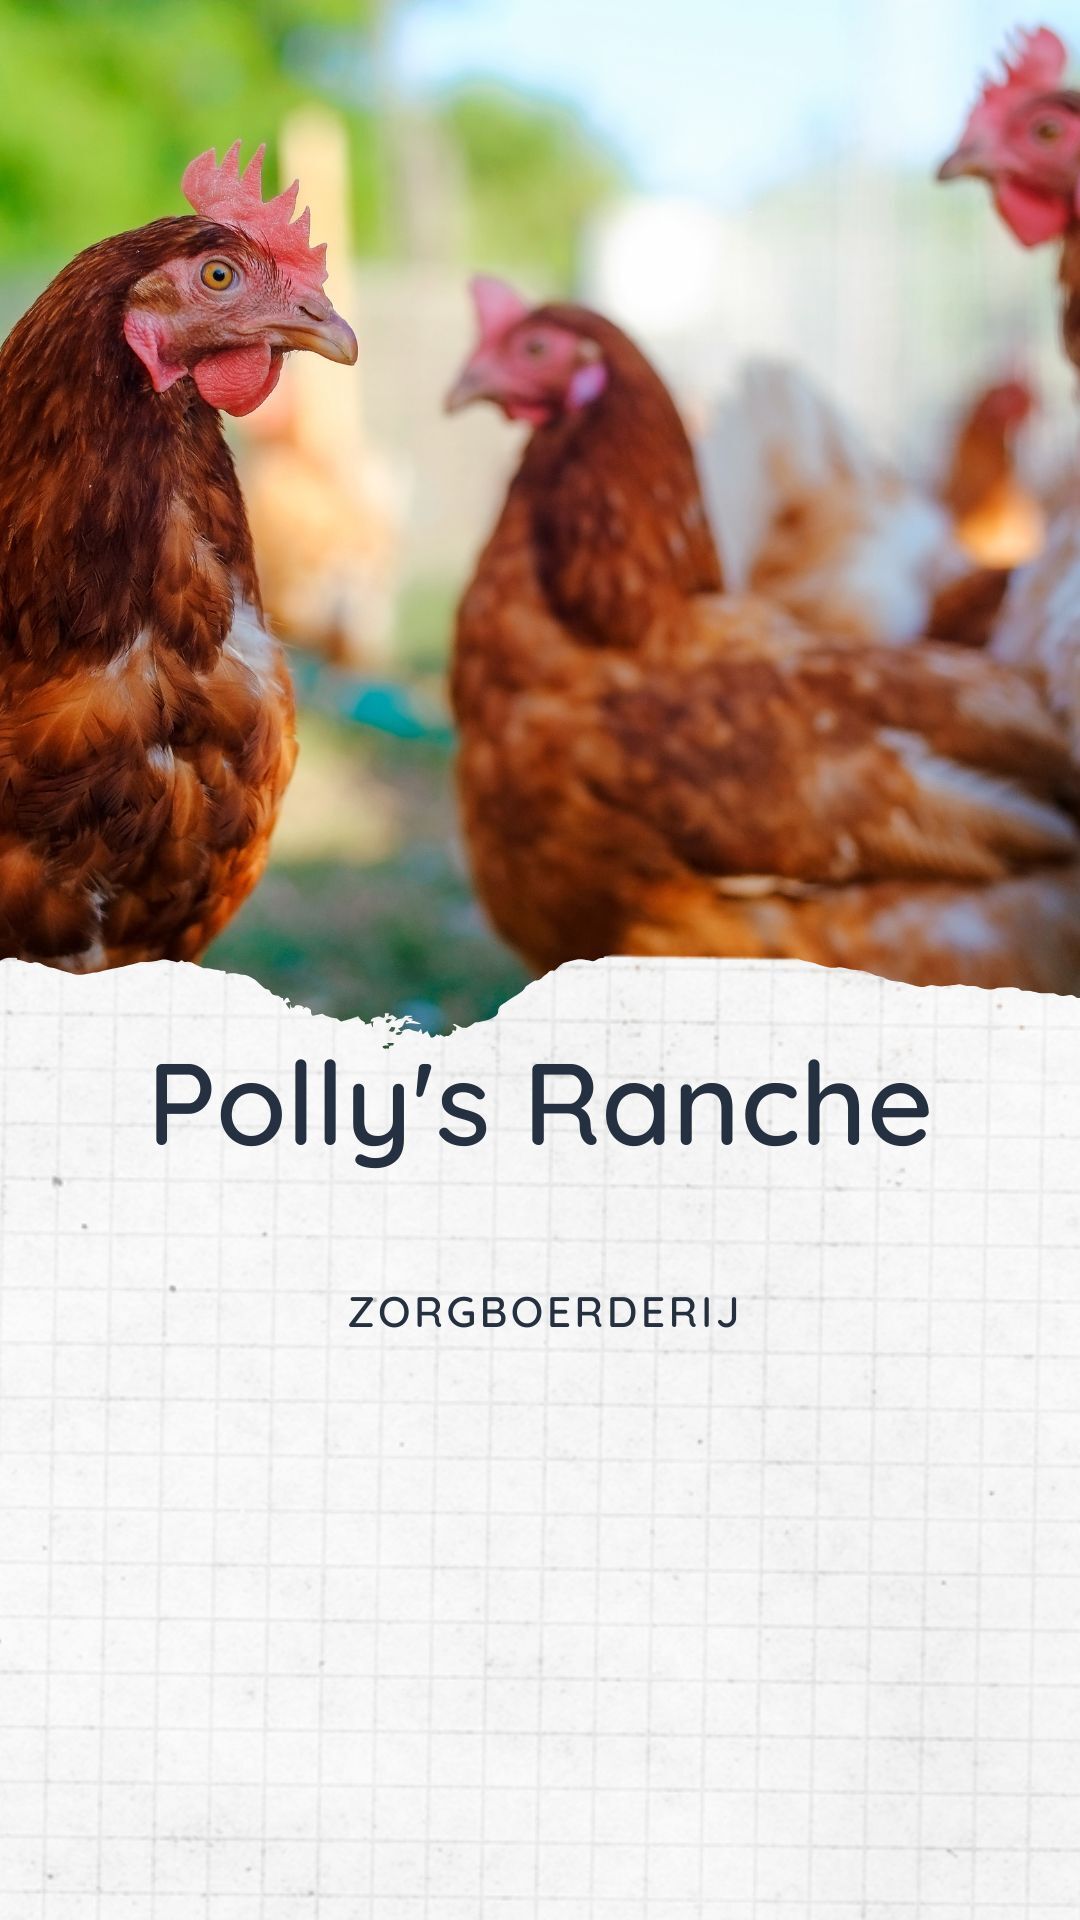 Polly's Ranch